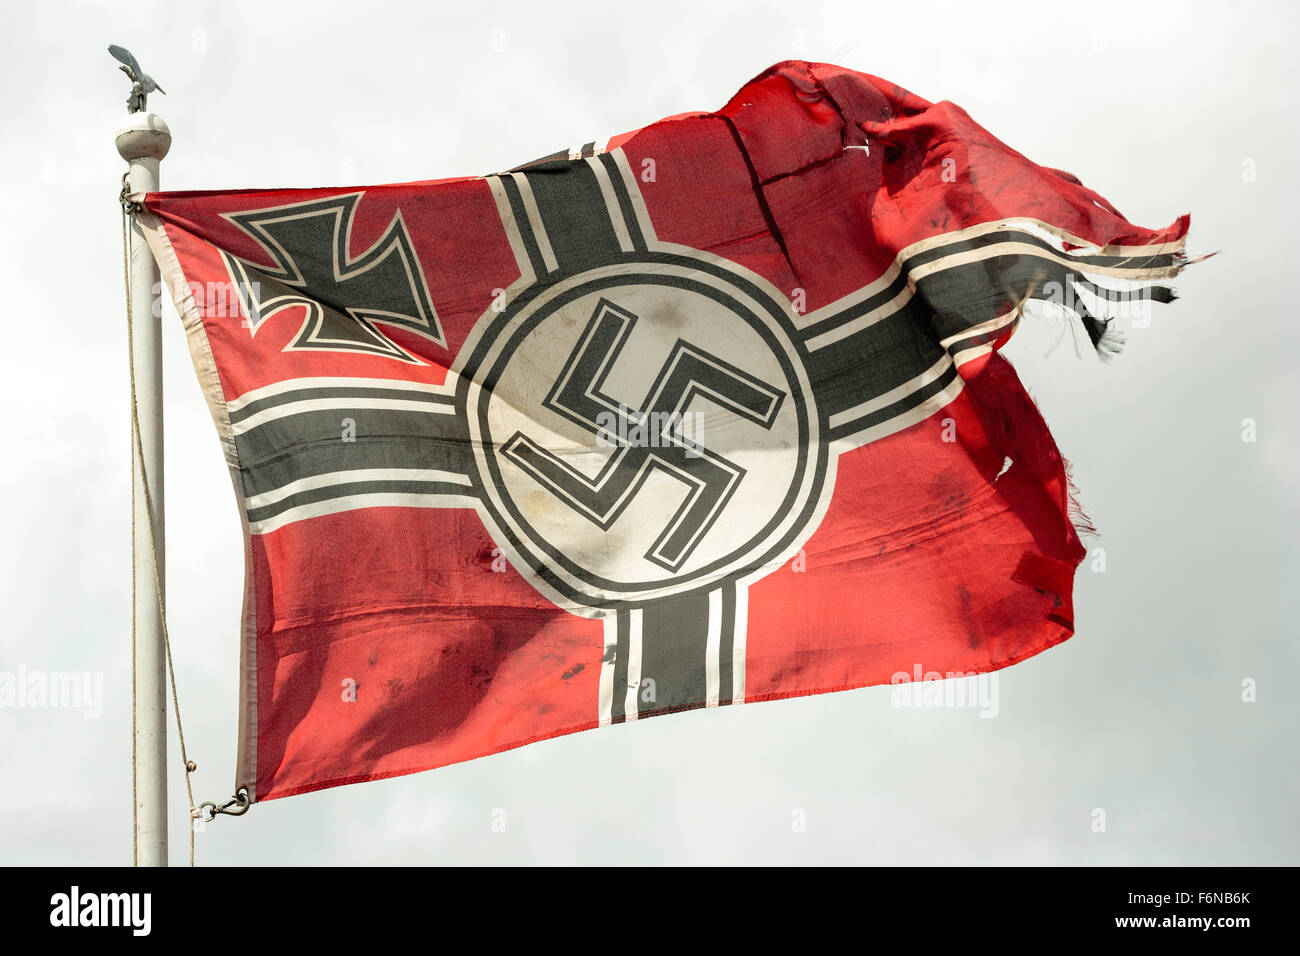 La seconda guerra mondiale la rievocazione. Lacerato dalla guerra della Wehrmacht tedesca bandiera con croce di ferro e con la svastica nazista, svolazzanti sulla sommità del pennone contro tempestoso cielo grigio. Foto Stock